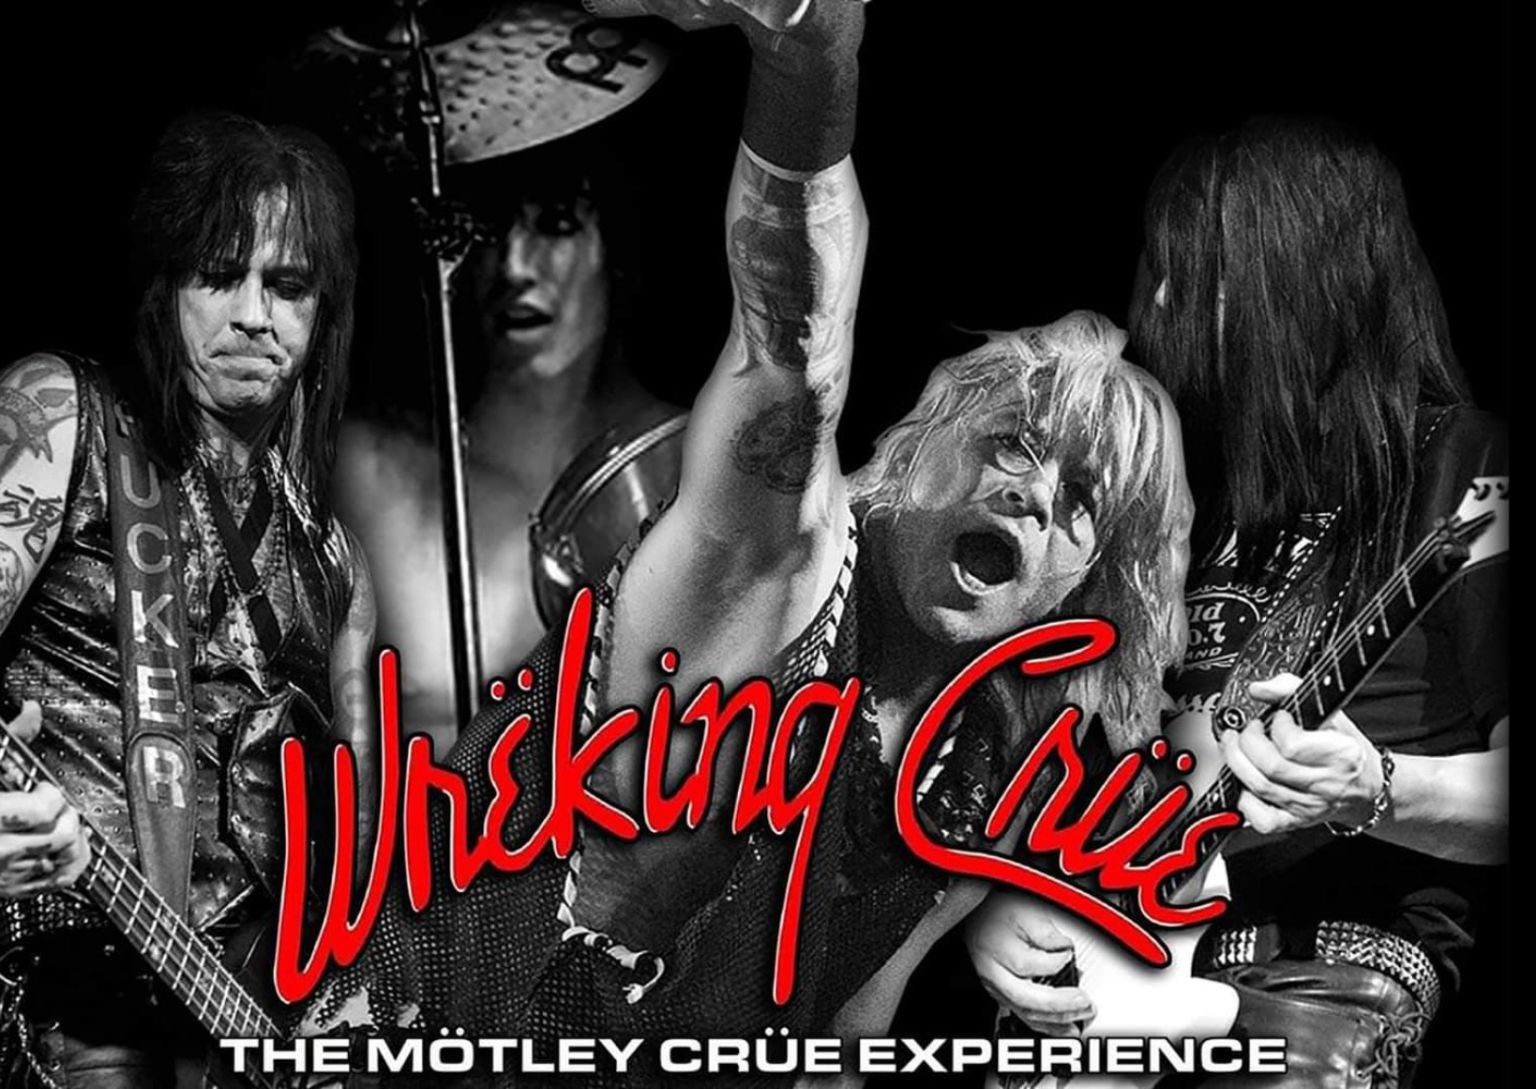 Wreking_Crue_Motley_Crue_Experience